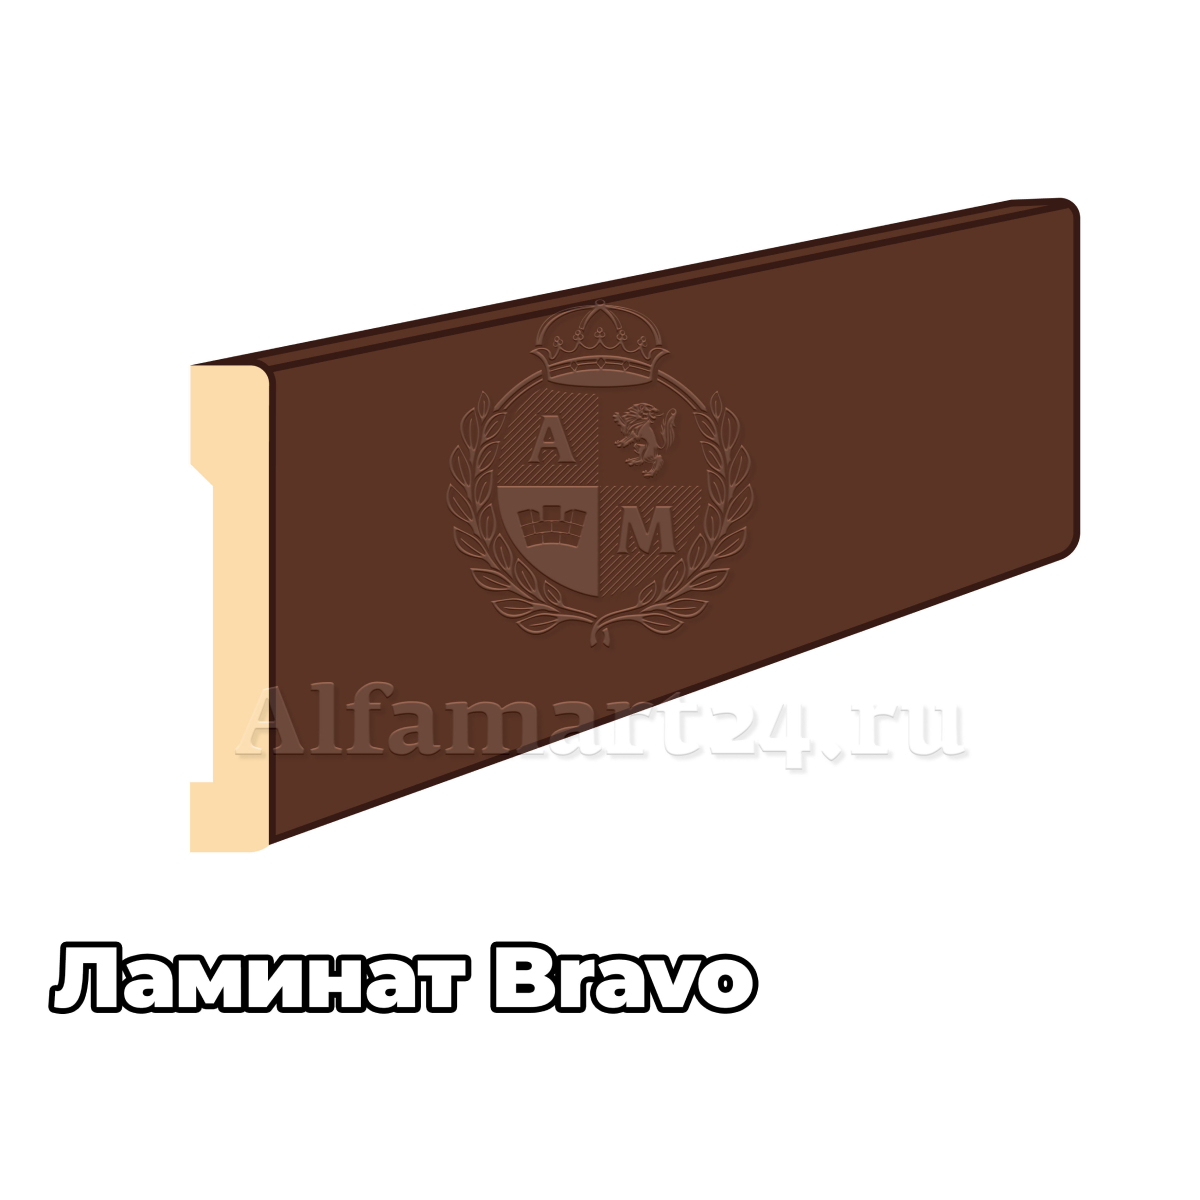 Наличник для Складной двери Bravo Л МДФ Полукруглый 2150*70*8 (В цвет двери) - 1 штука